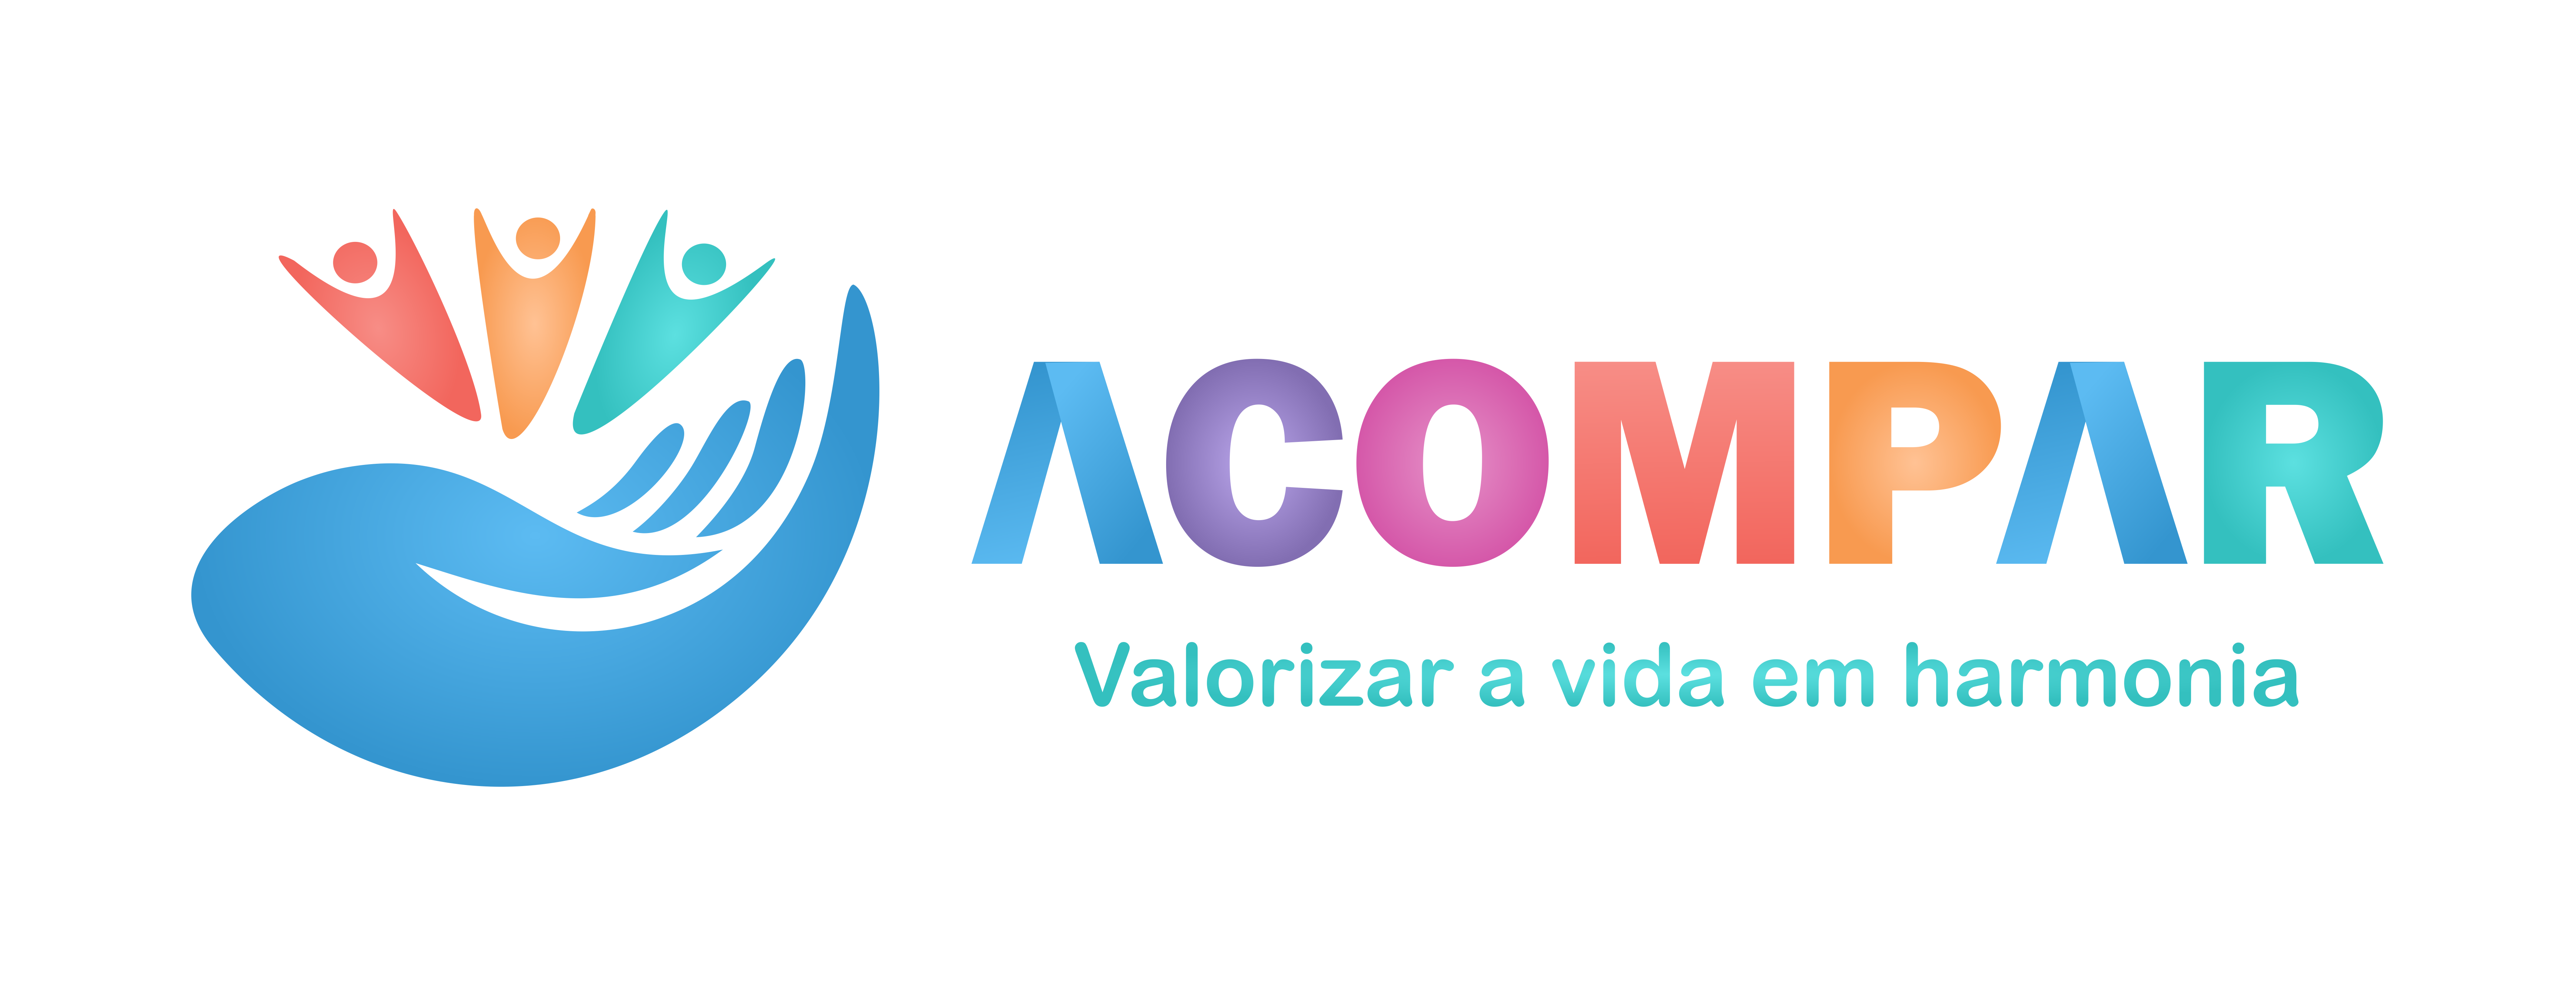 Logotipo_Acompar_Vertical_Fotográfico